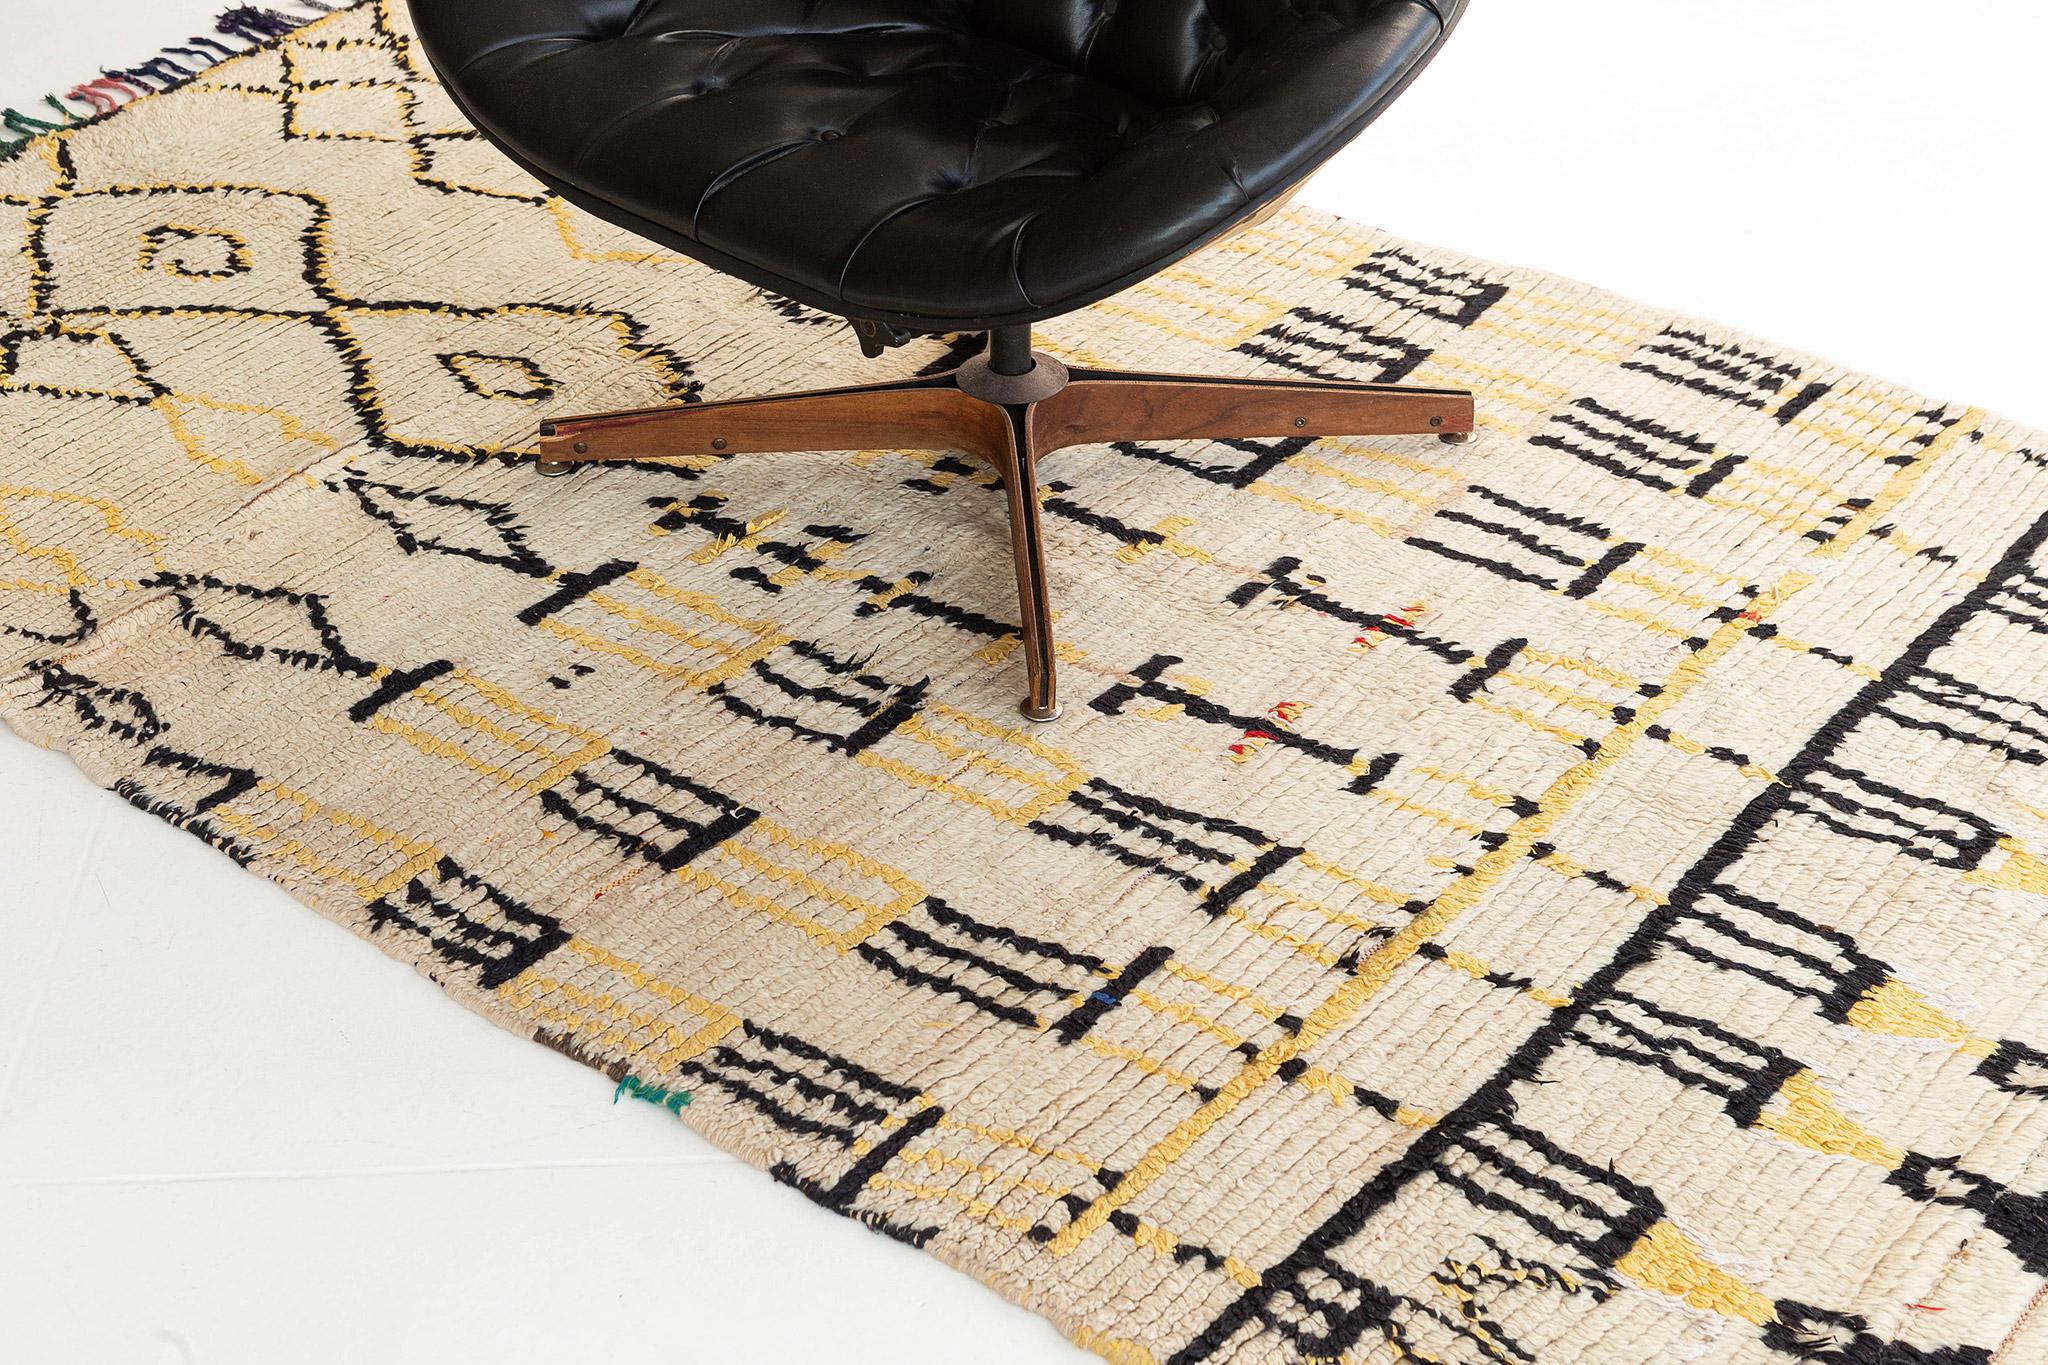 Mit seinem primitiven Charme und seiner verlockenden Asymmetrie besticht dieser marokkanische Vintage Azilal Tribe Rugs durch ein visuell einwandfreies Design. Dieser außergewöhnliche Teppich zeigt ein atemberaubendes, symbolträchtiges Muster, das